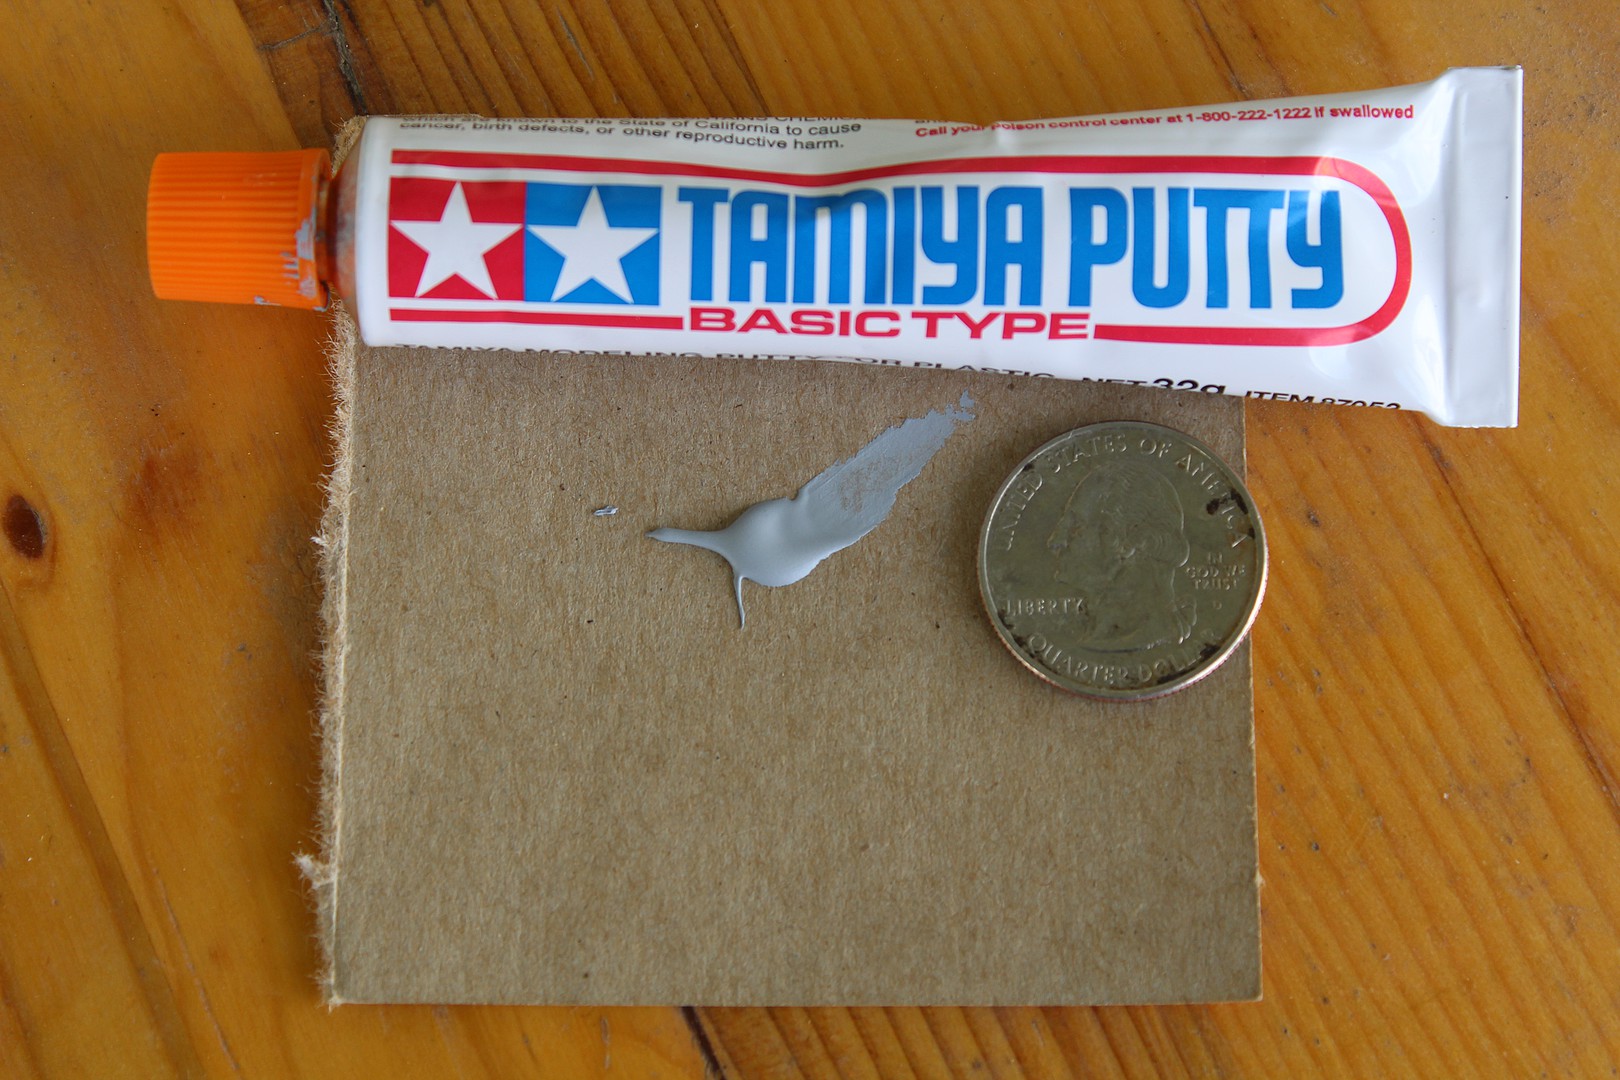 Buy Tamiya Putty (Basic Type) online for 4,95€